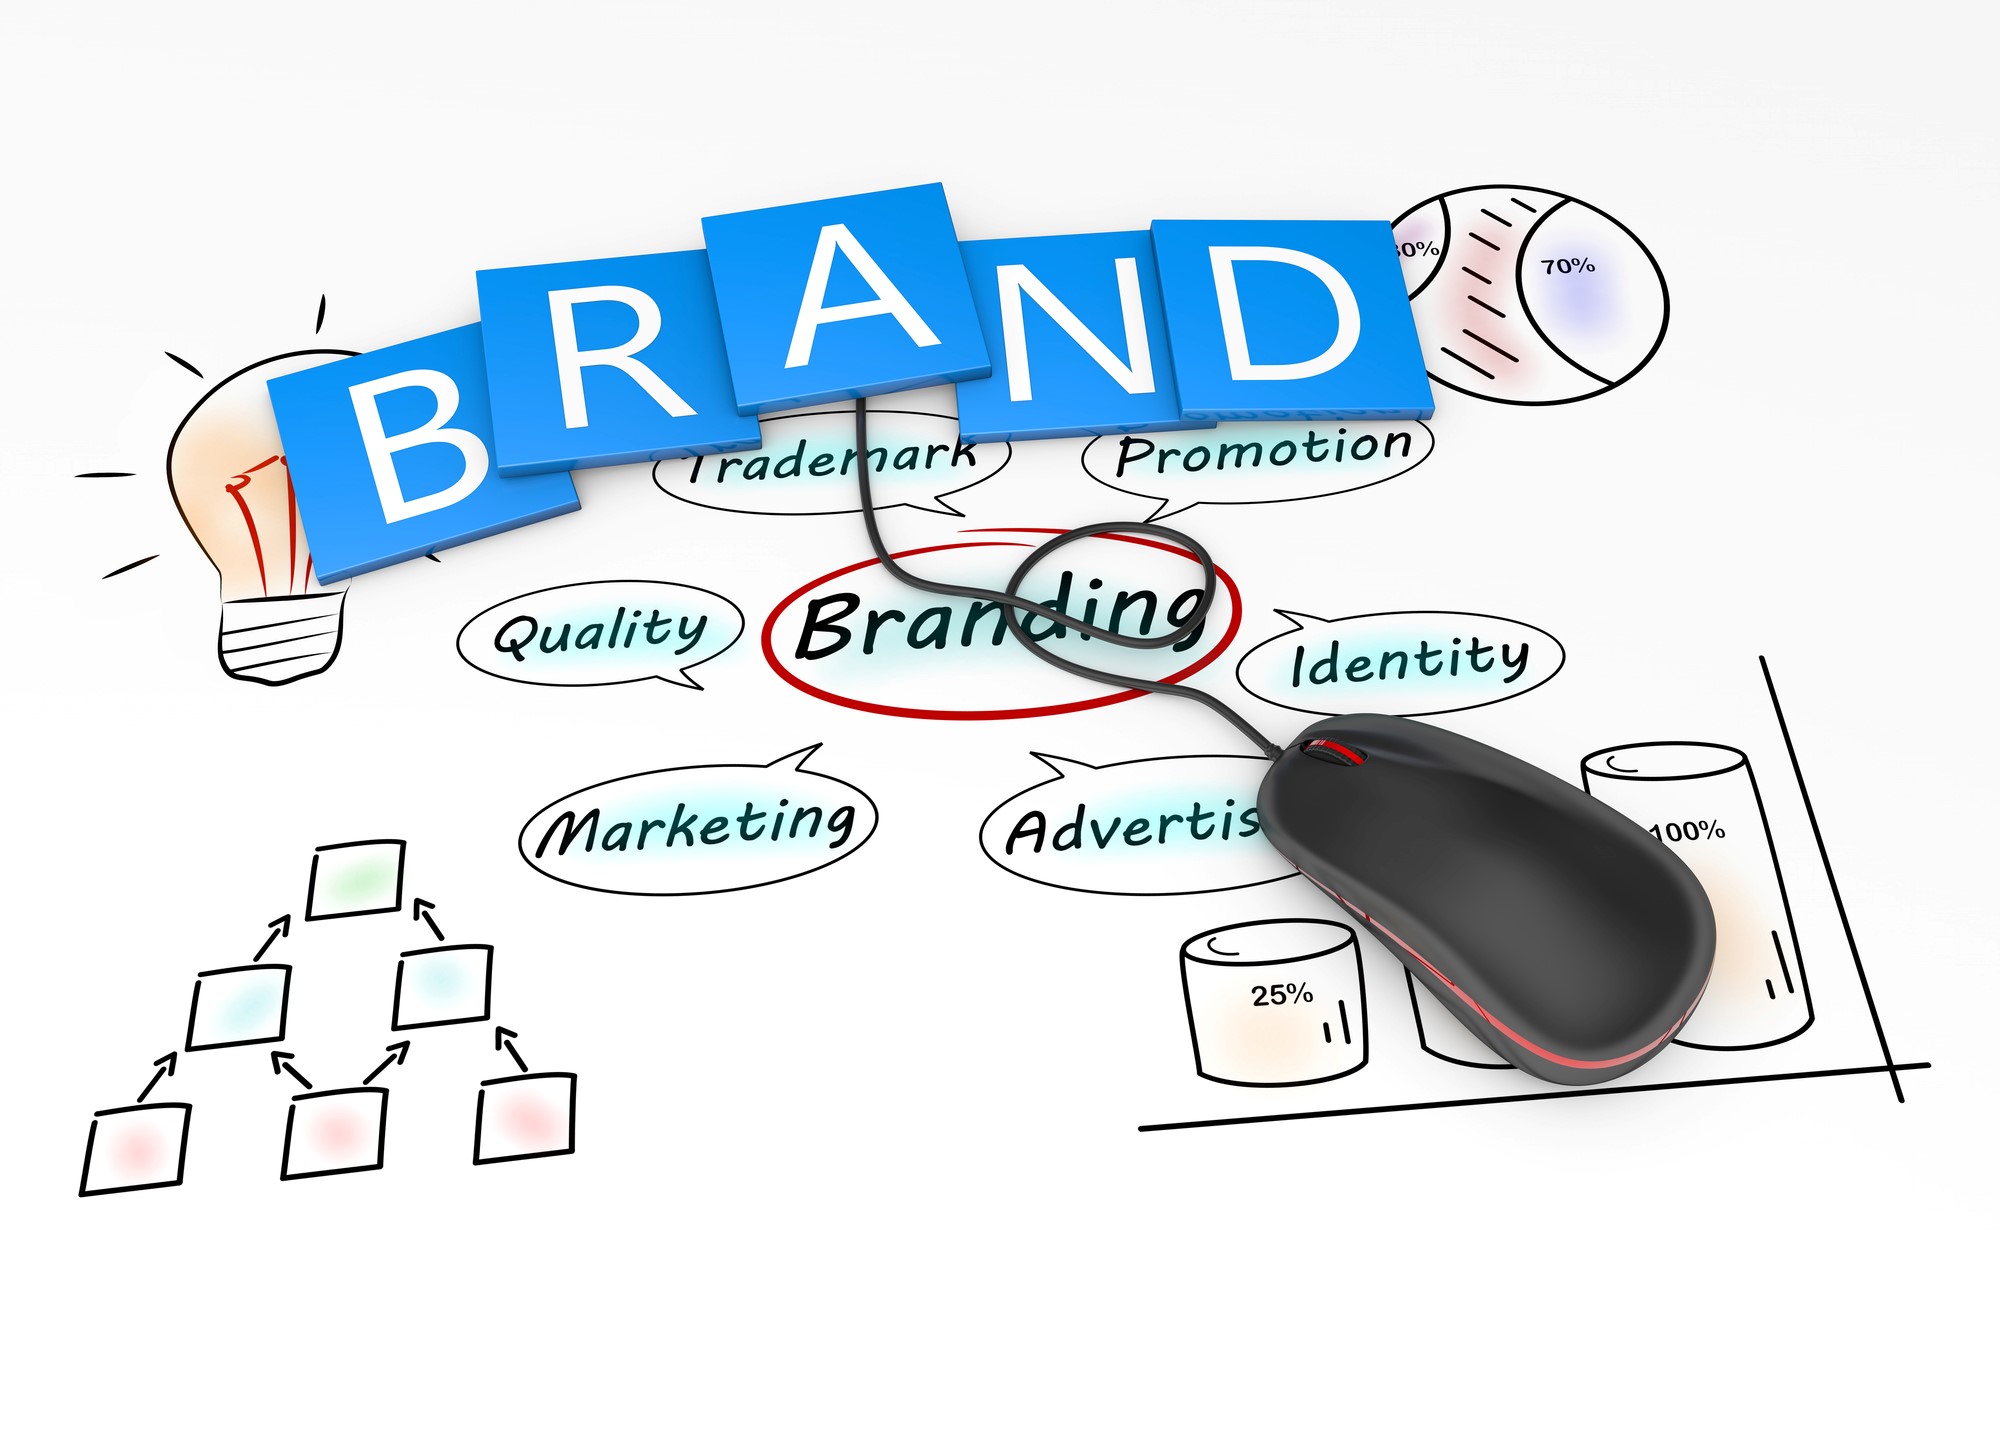 Brand and logo design